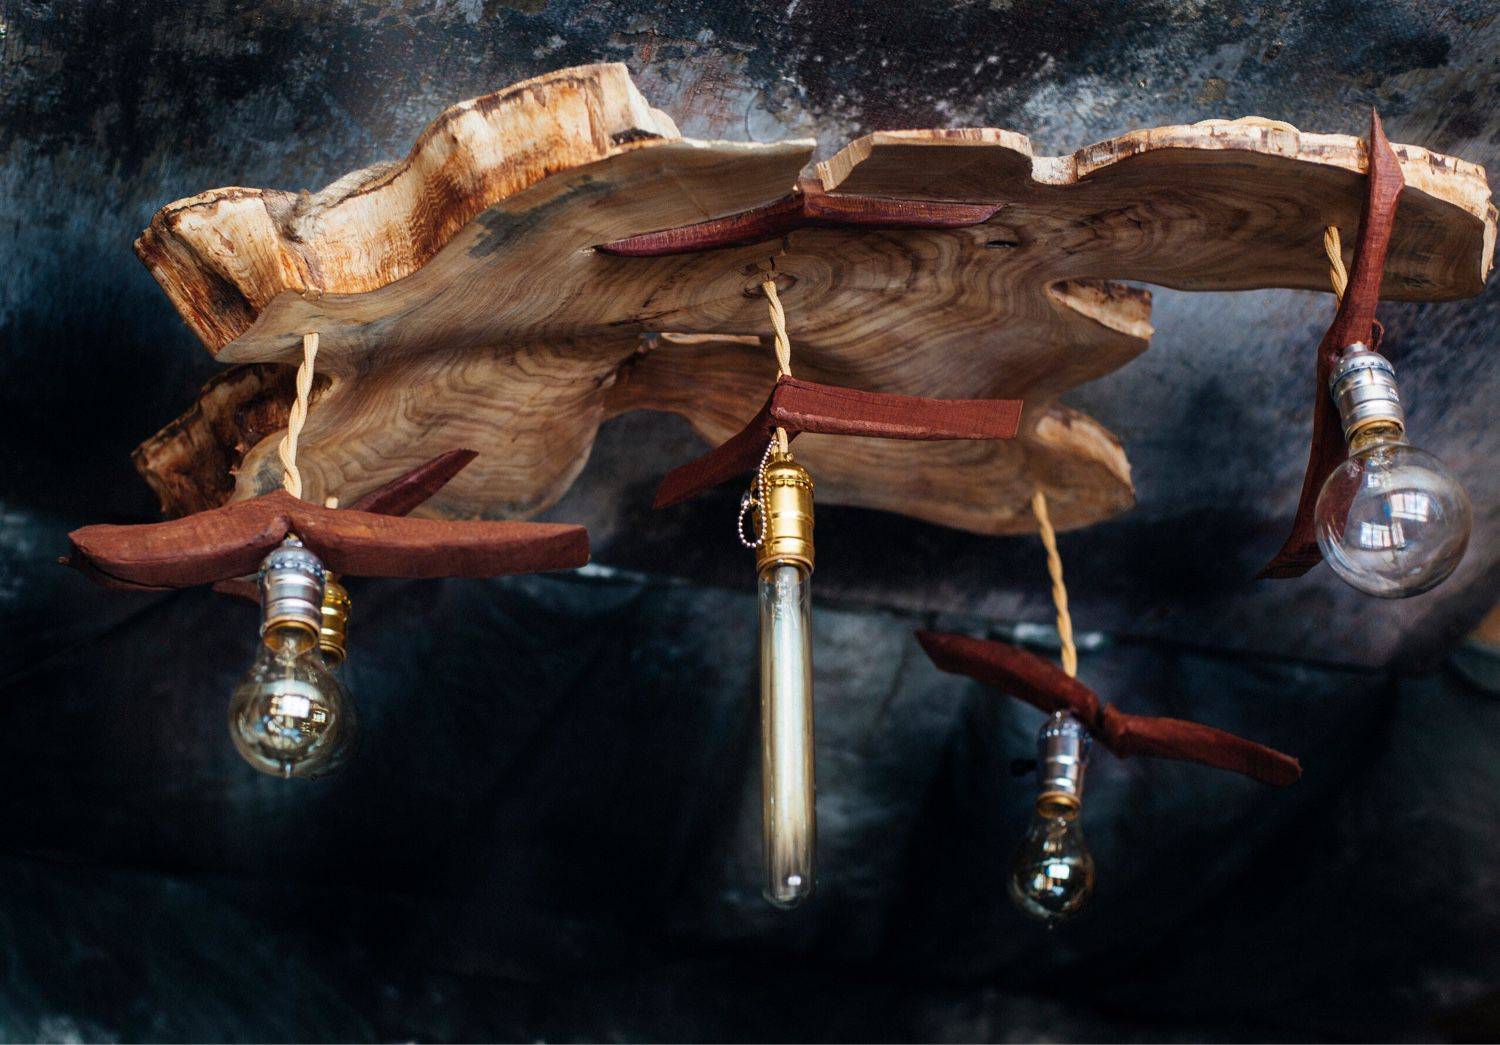 50 необыкновенных светильников из дерева